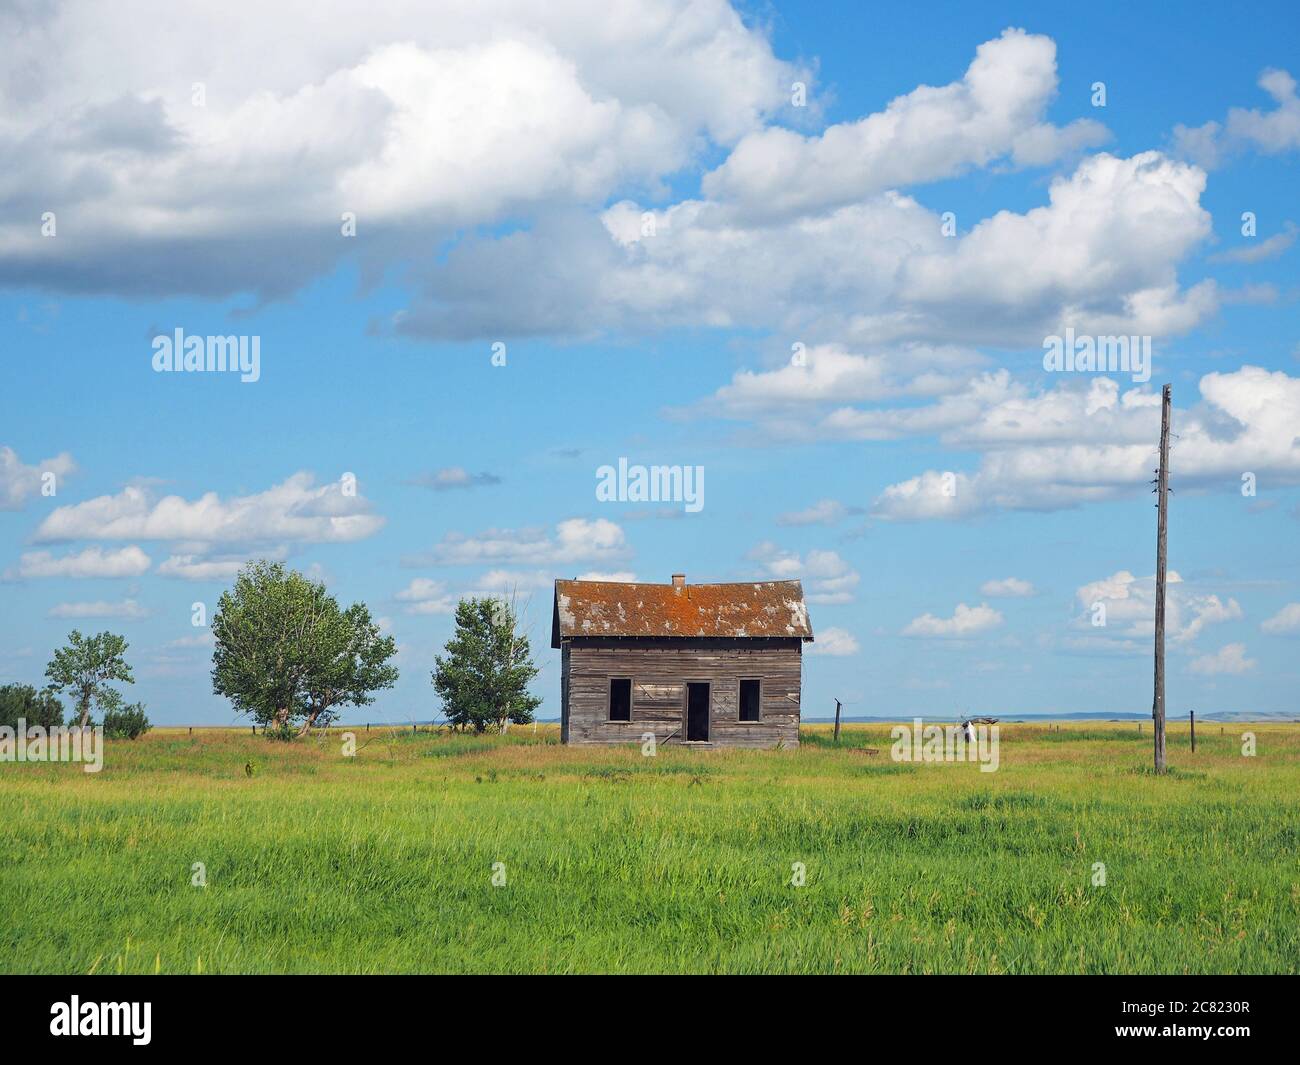 Shack on farmland, Alberta, Canada Stock Photo